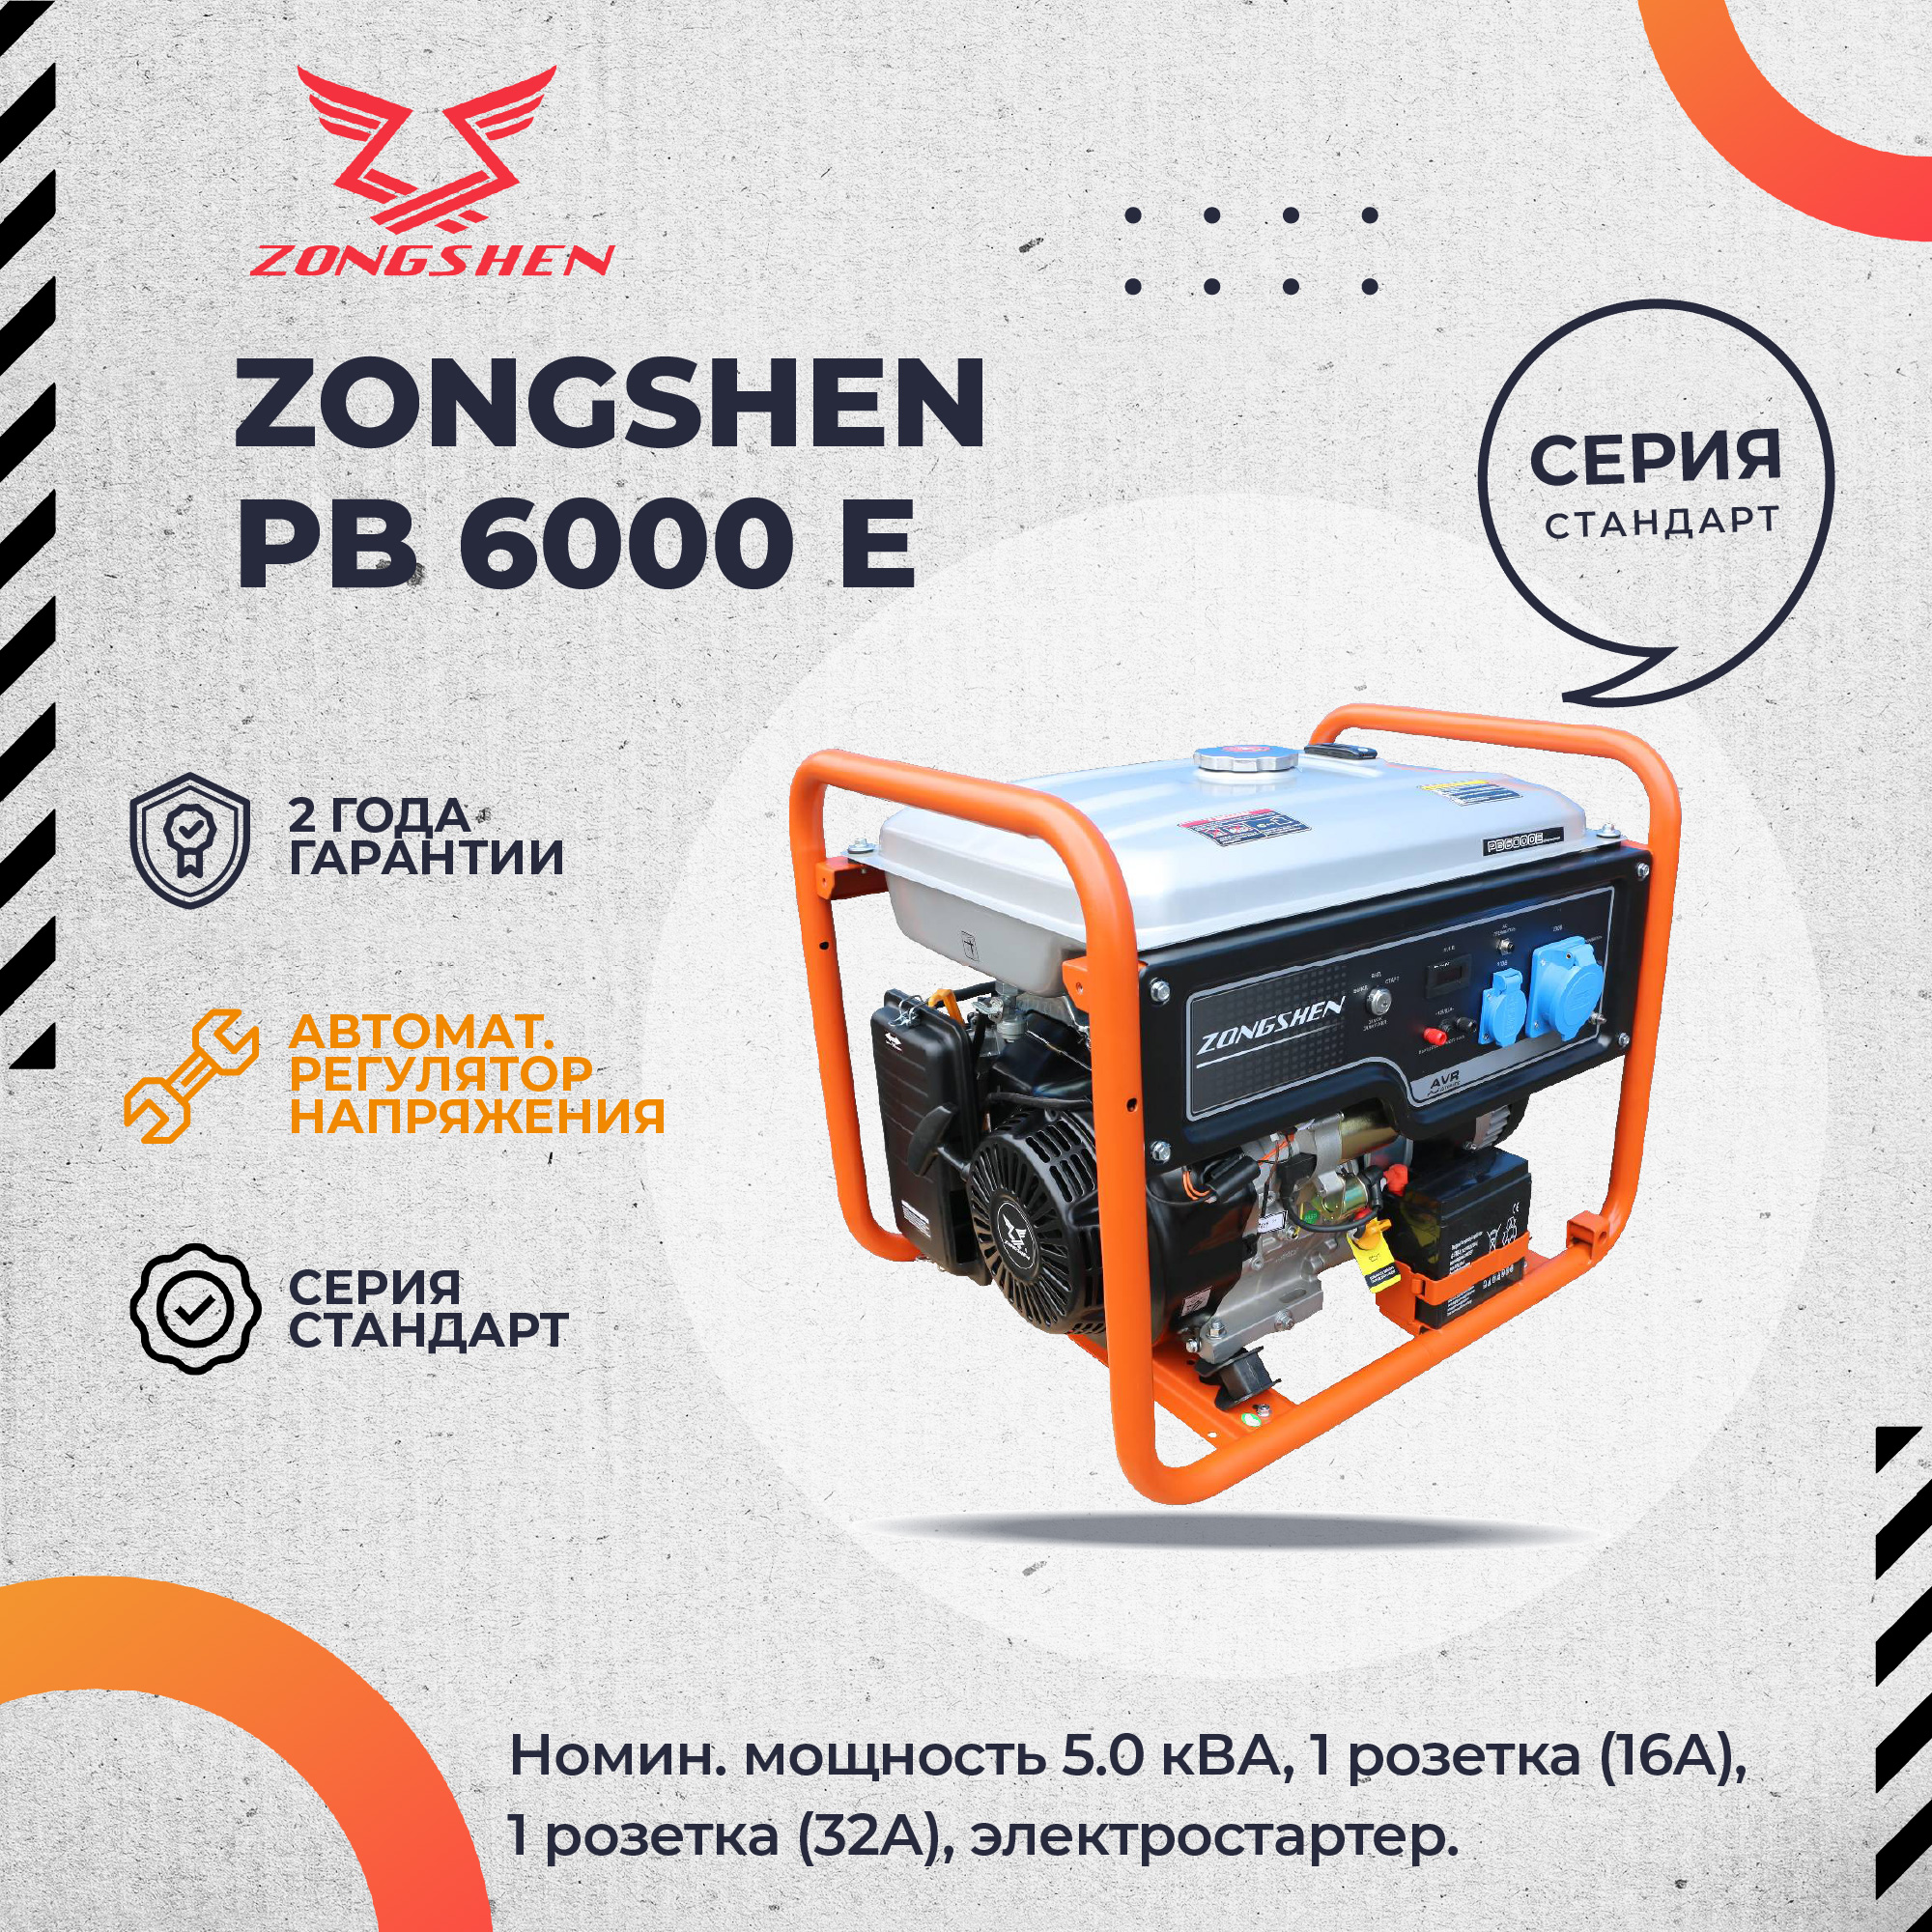 Бензиновый генератор Zongshen PB 6000 E